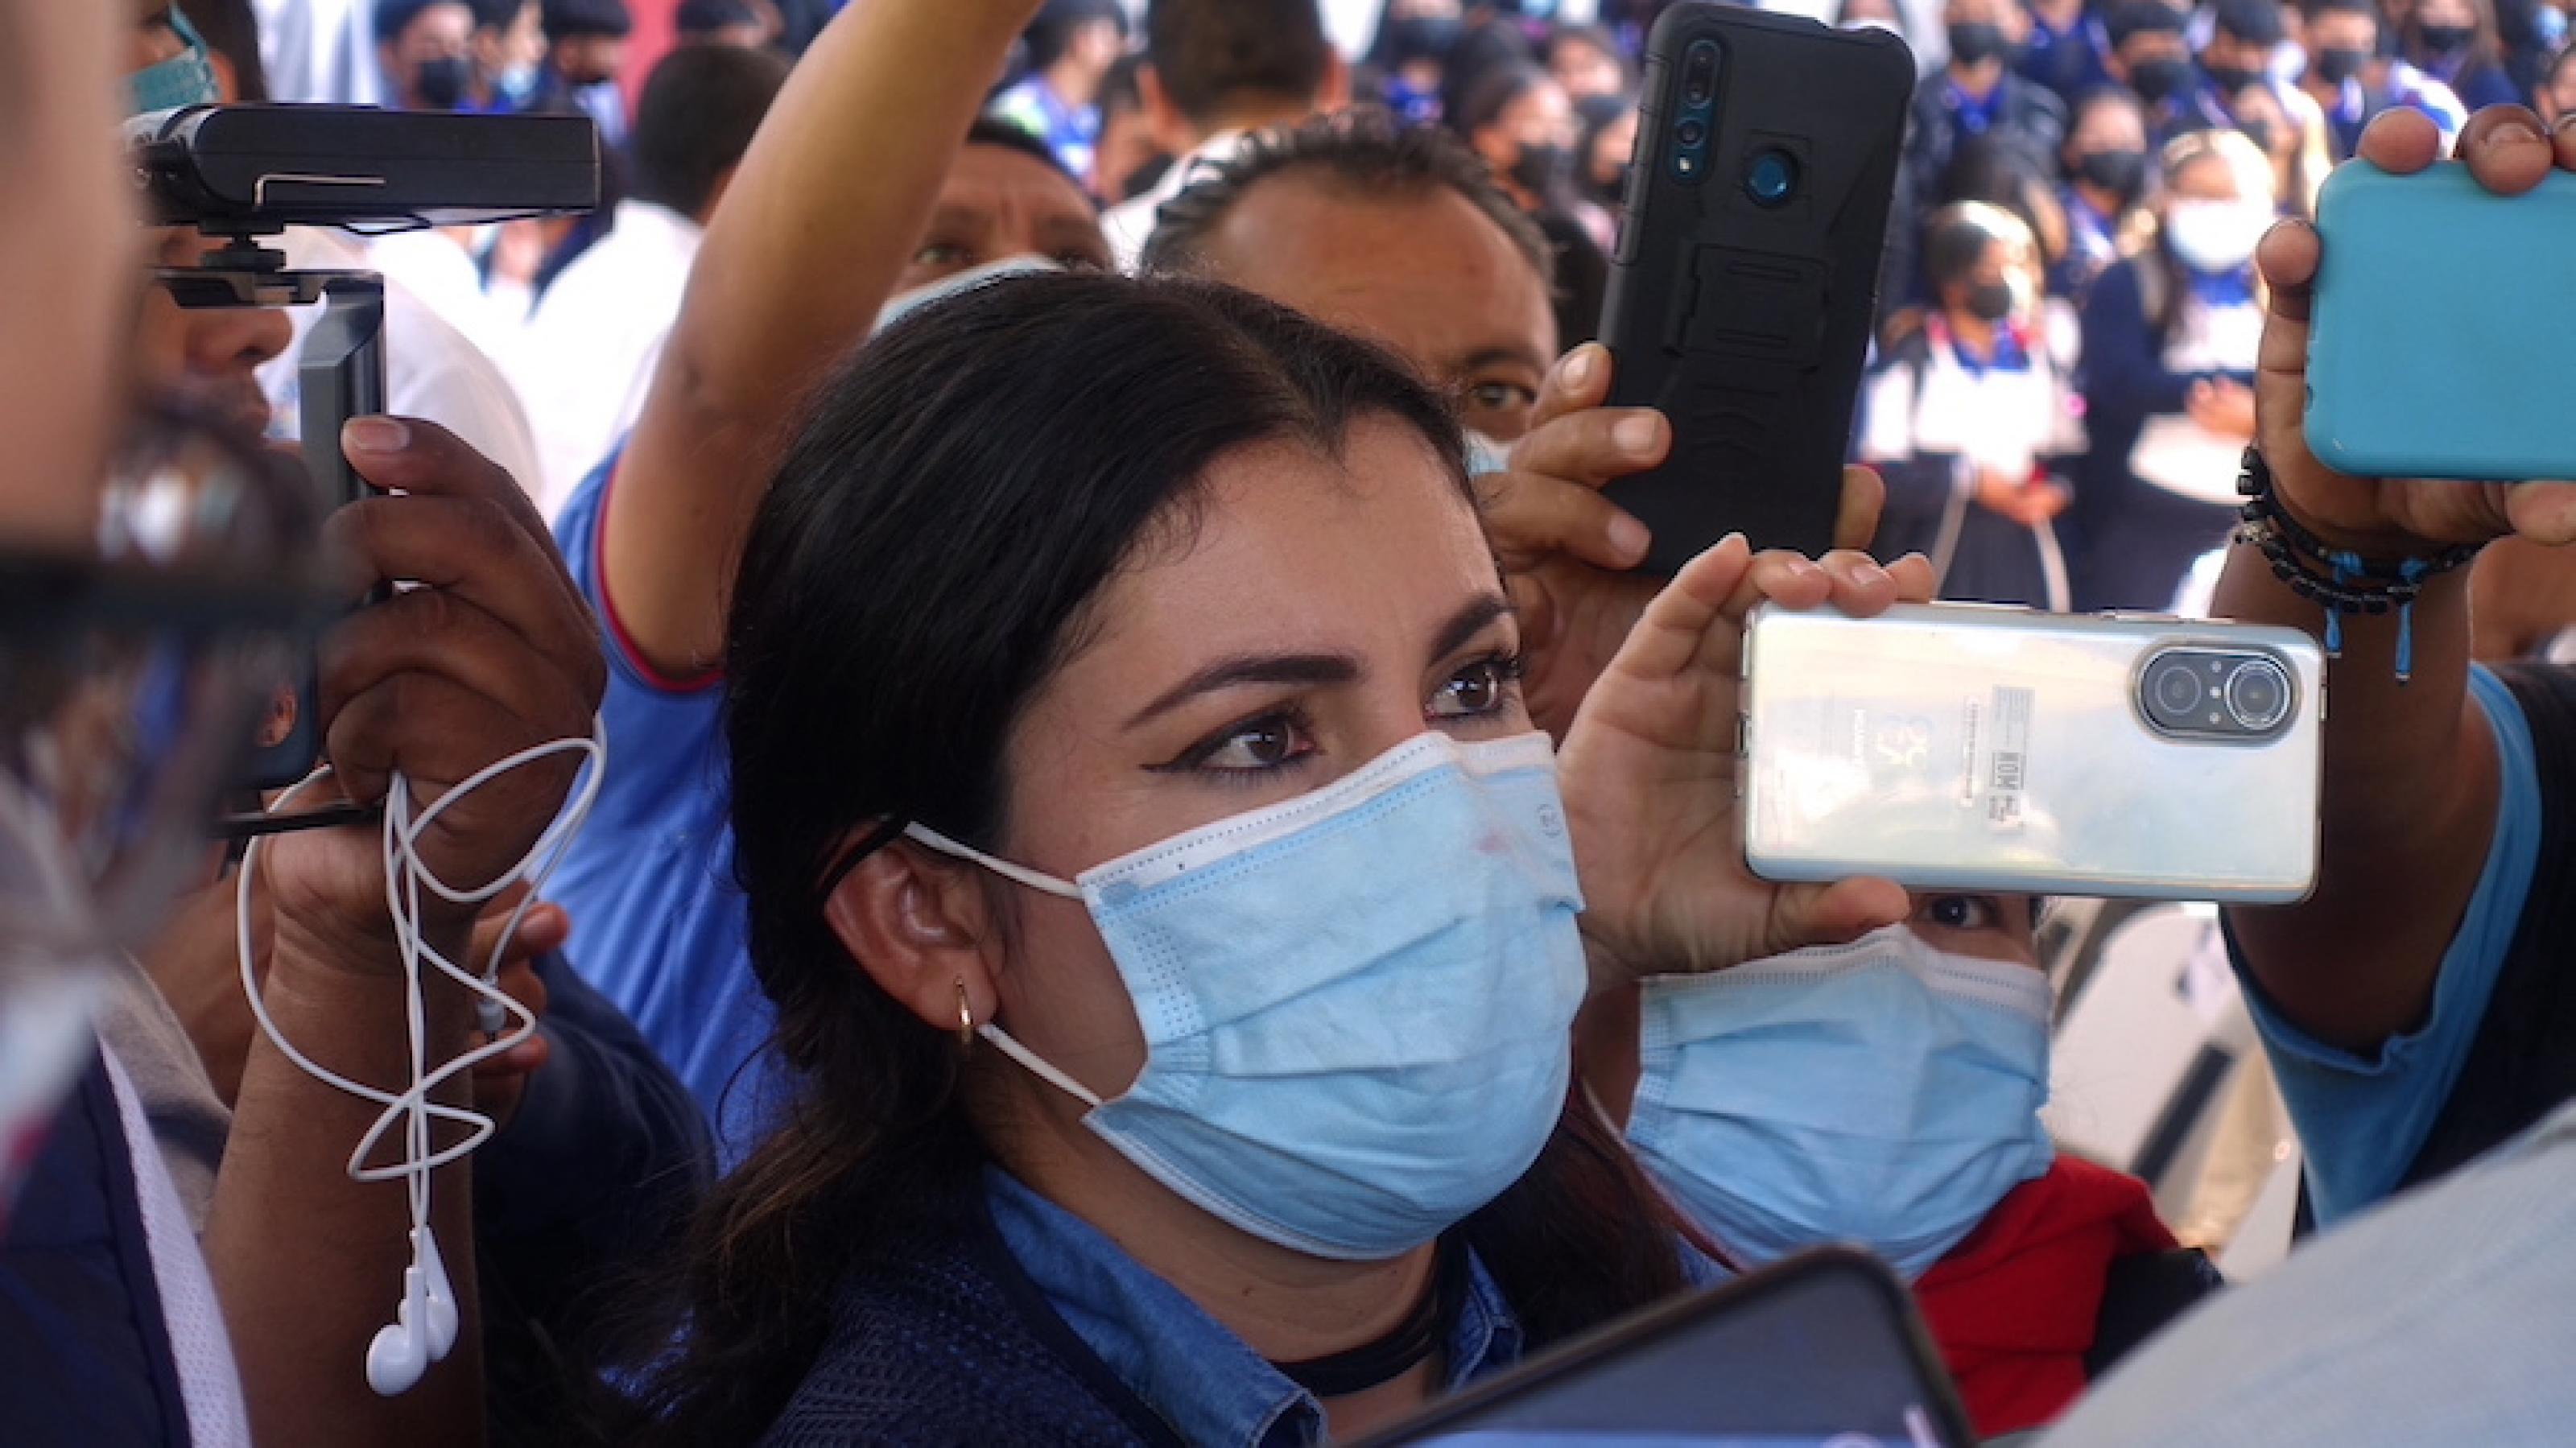 Die Journalistin steht in einer Menge, die Smartphones in die Luft hält, sie trägt eine Gesichtsmaske